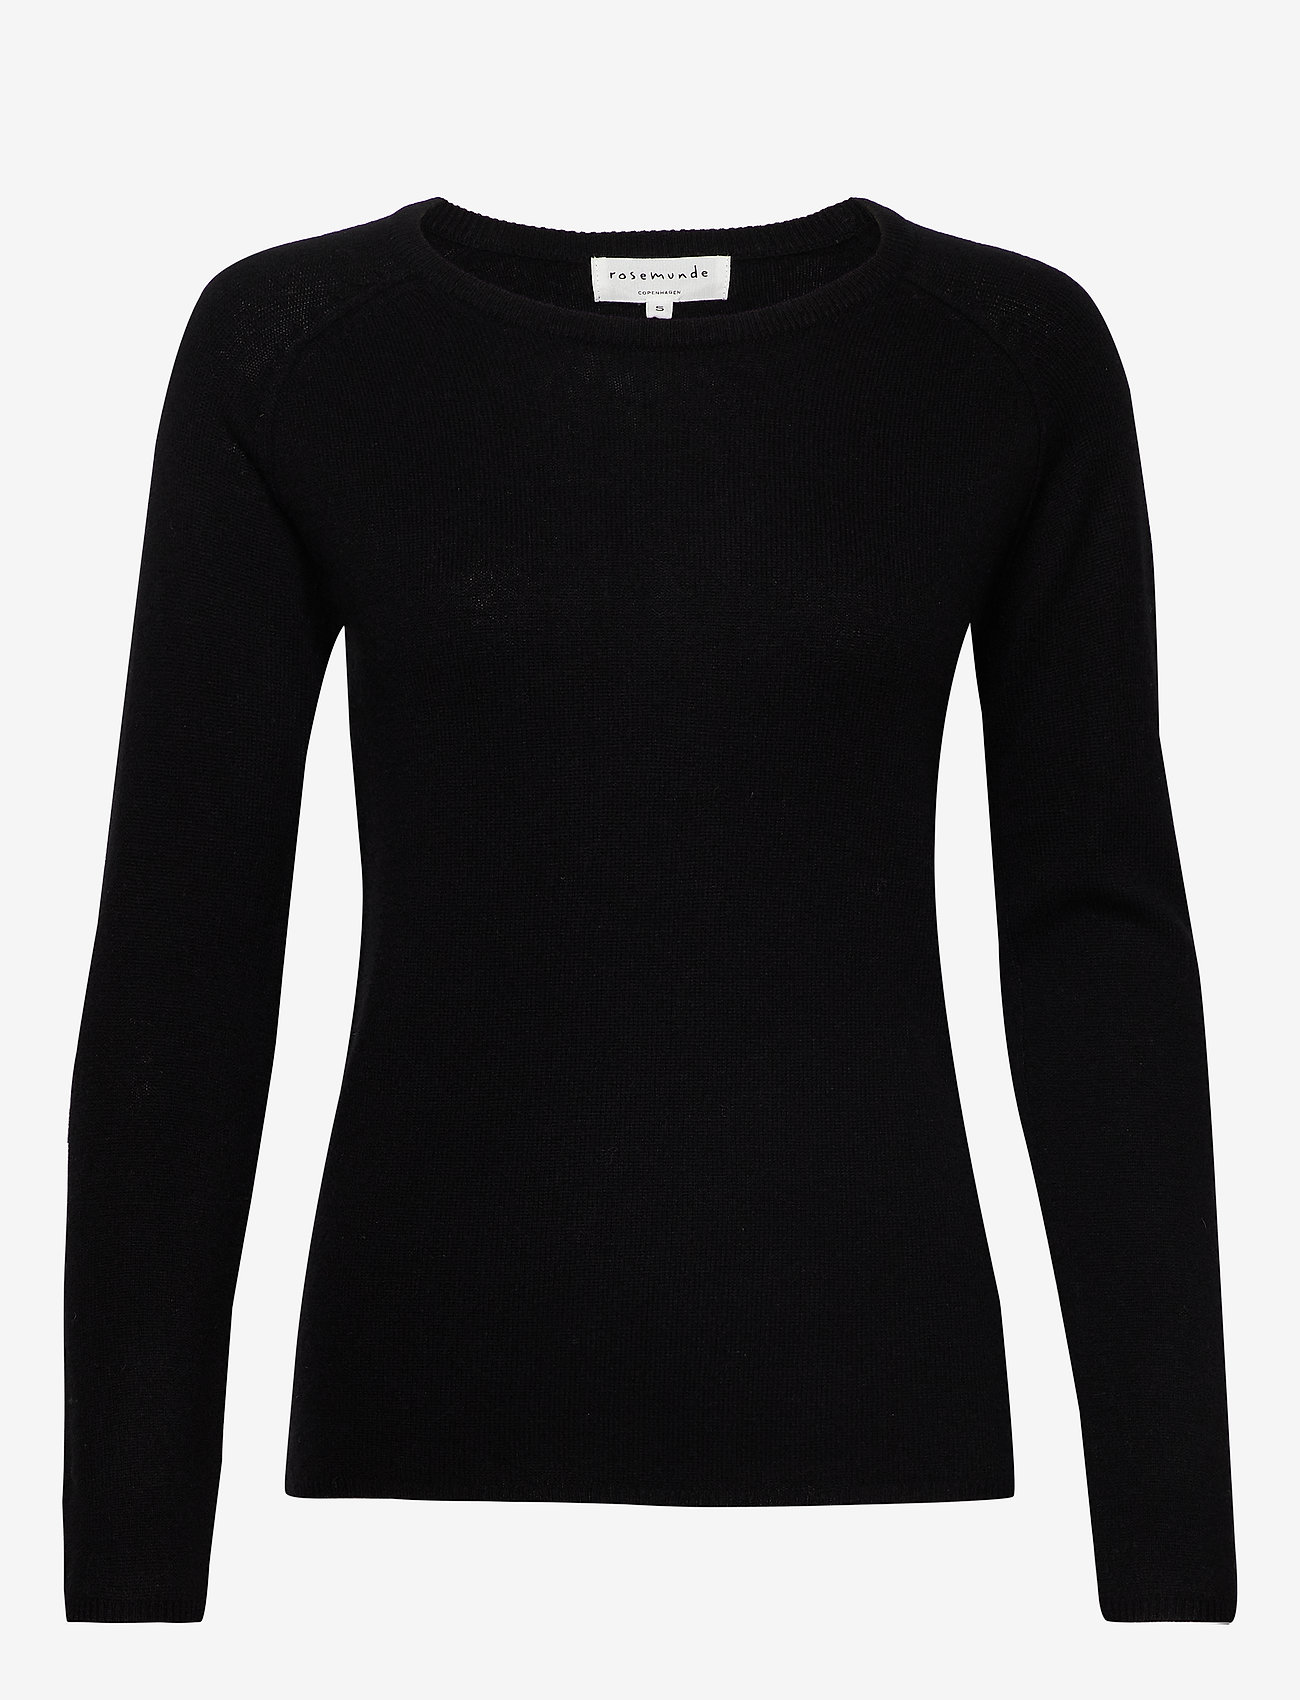 Rosemunde - Wool & cashmere pullover - striktrøjer - black - 0